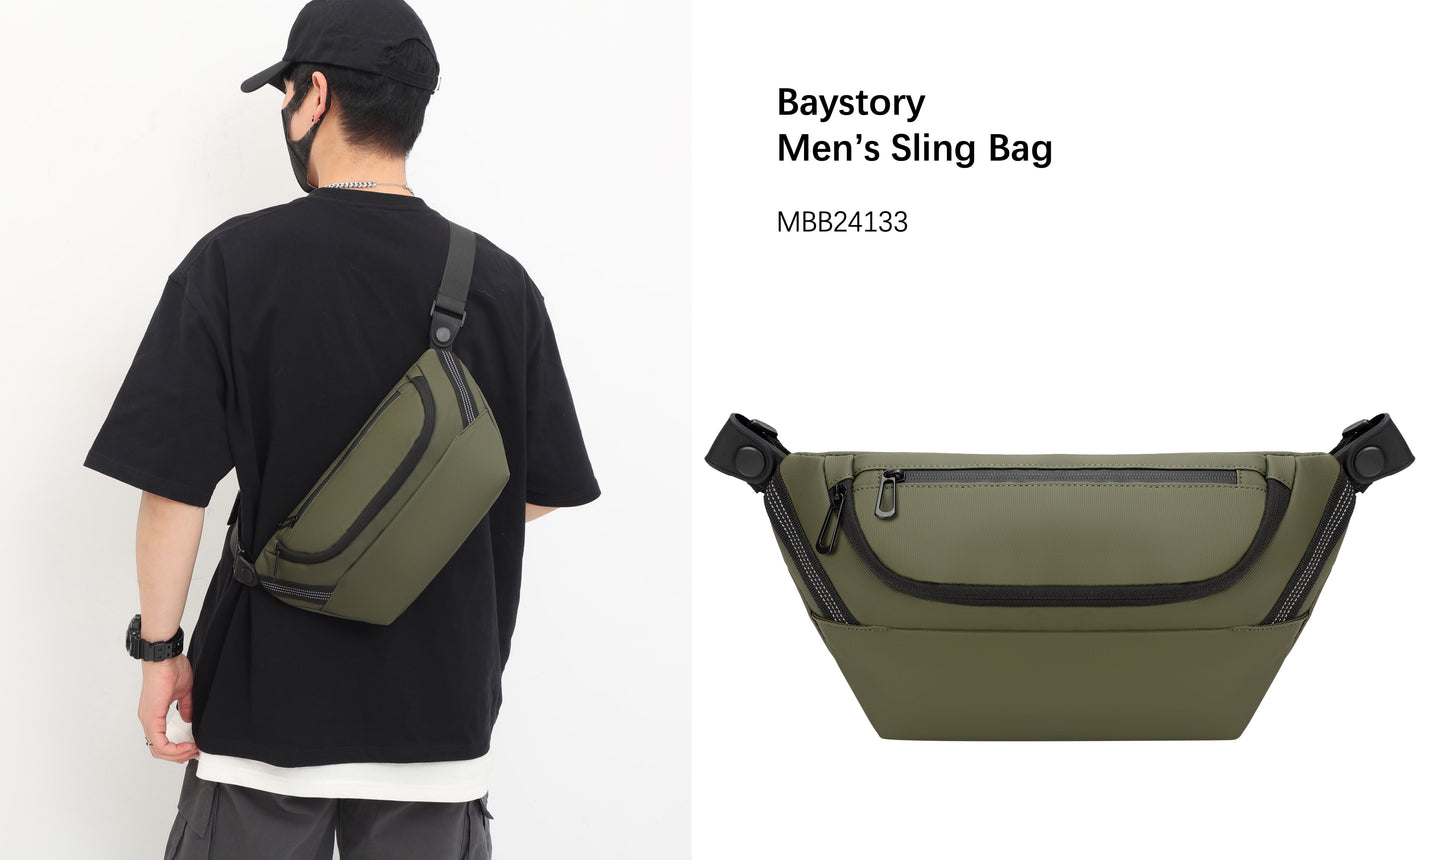 Baystory Men’s Sling Bag MBB24123 - Baystory